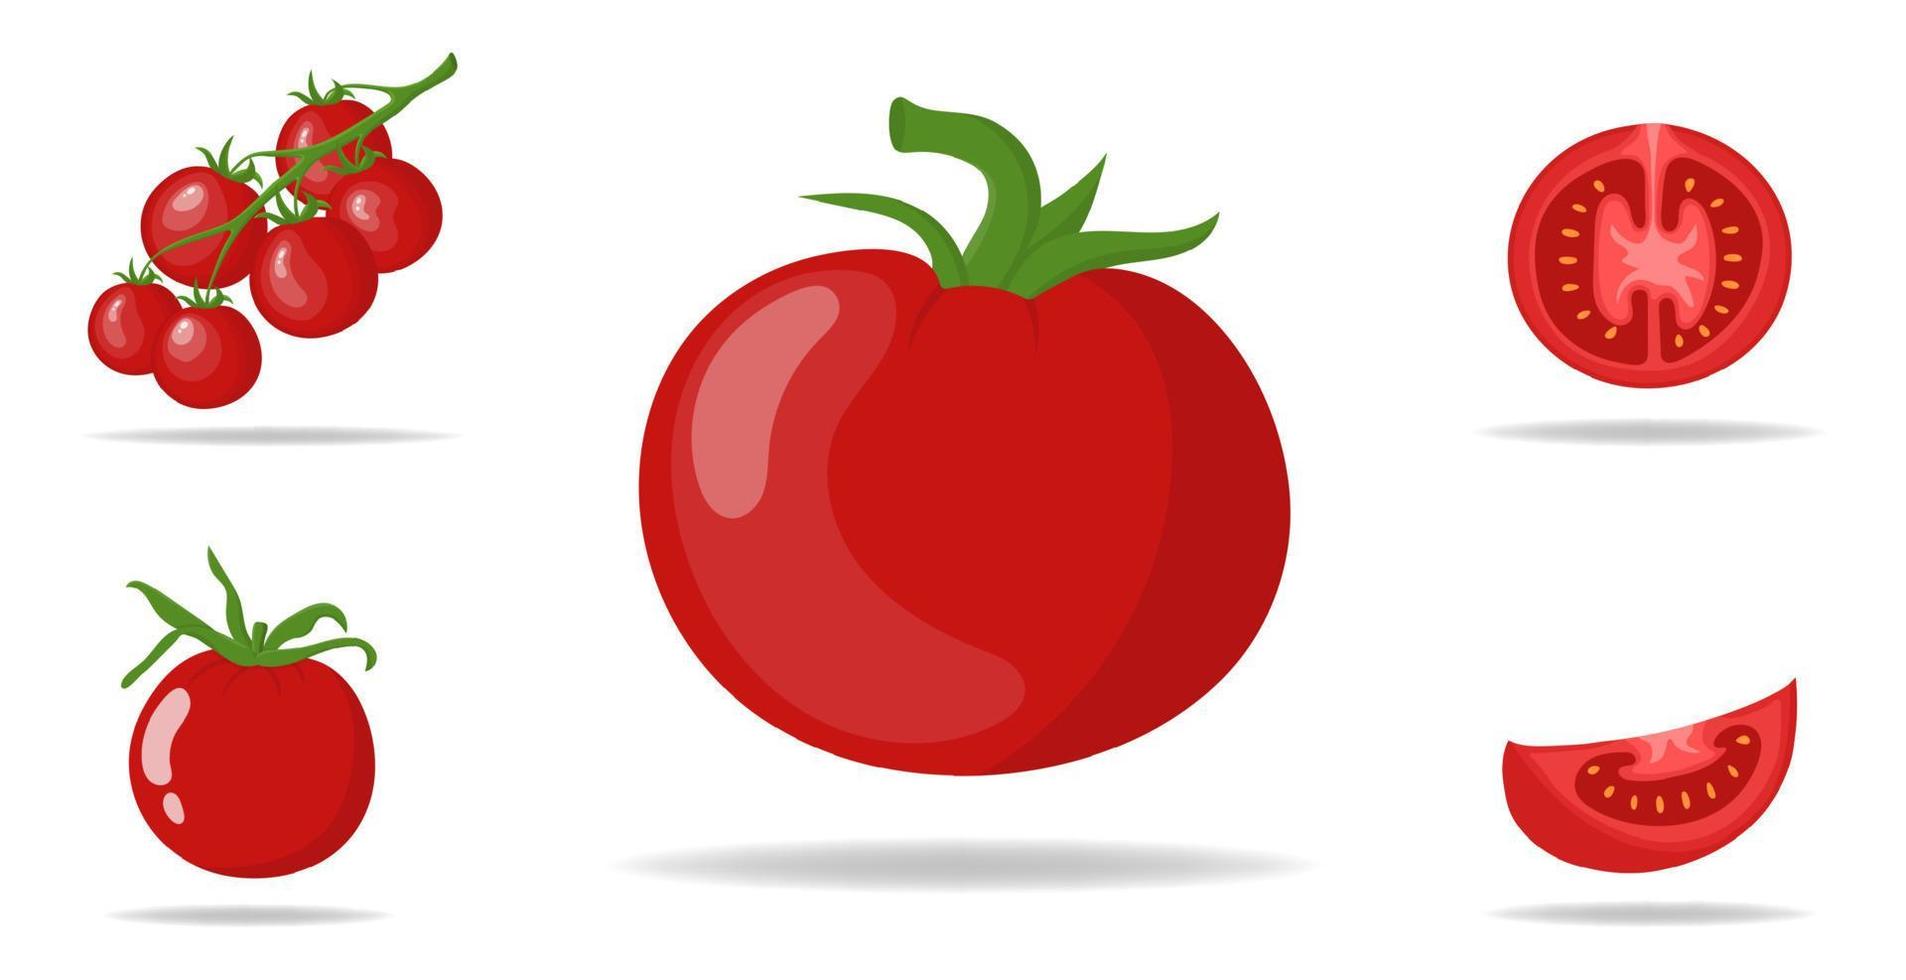 conjunto de tomates vermelhos frescos isolados no fundo branco. ramos, ícones de tomate inteiro, metade e fatia para mercado, design de receita. comida orgânica. estilo de desenho animado. ilustração vetorial para design, web. vetor